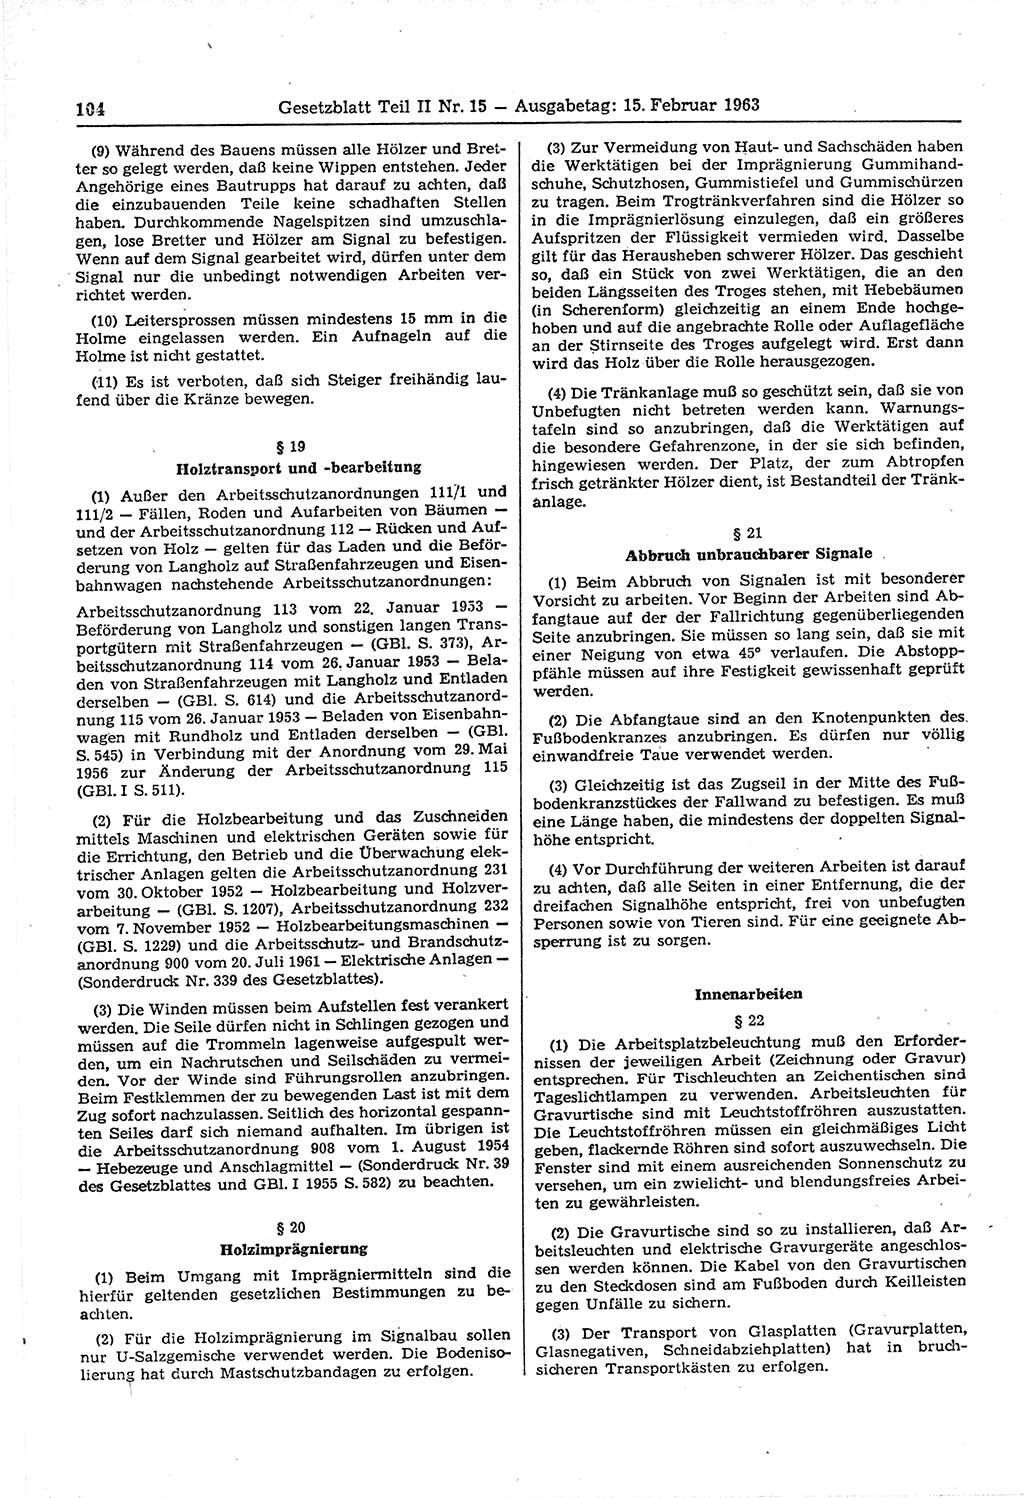 Gesetzblatt (GBl.) der Deutschen Demokratischen Republik (DDR) Teil ⅠⅠ 1963, Seite 104 (GBl. DDR ⅠⅠ 1963, S. 104)